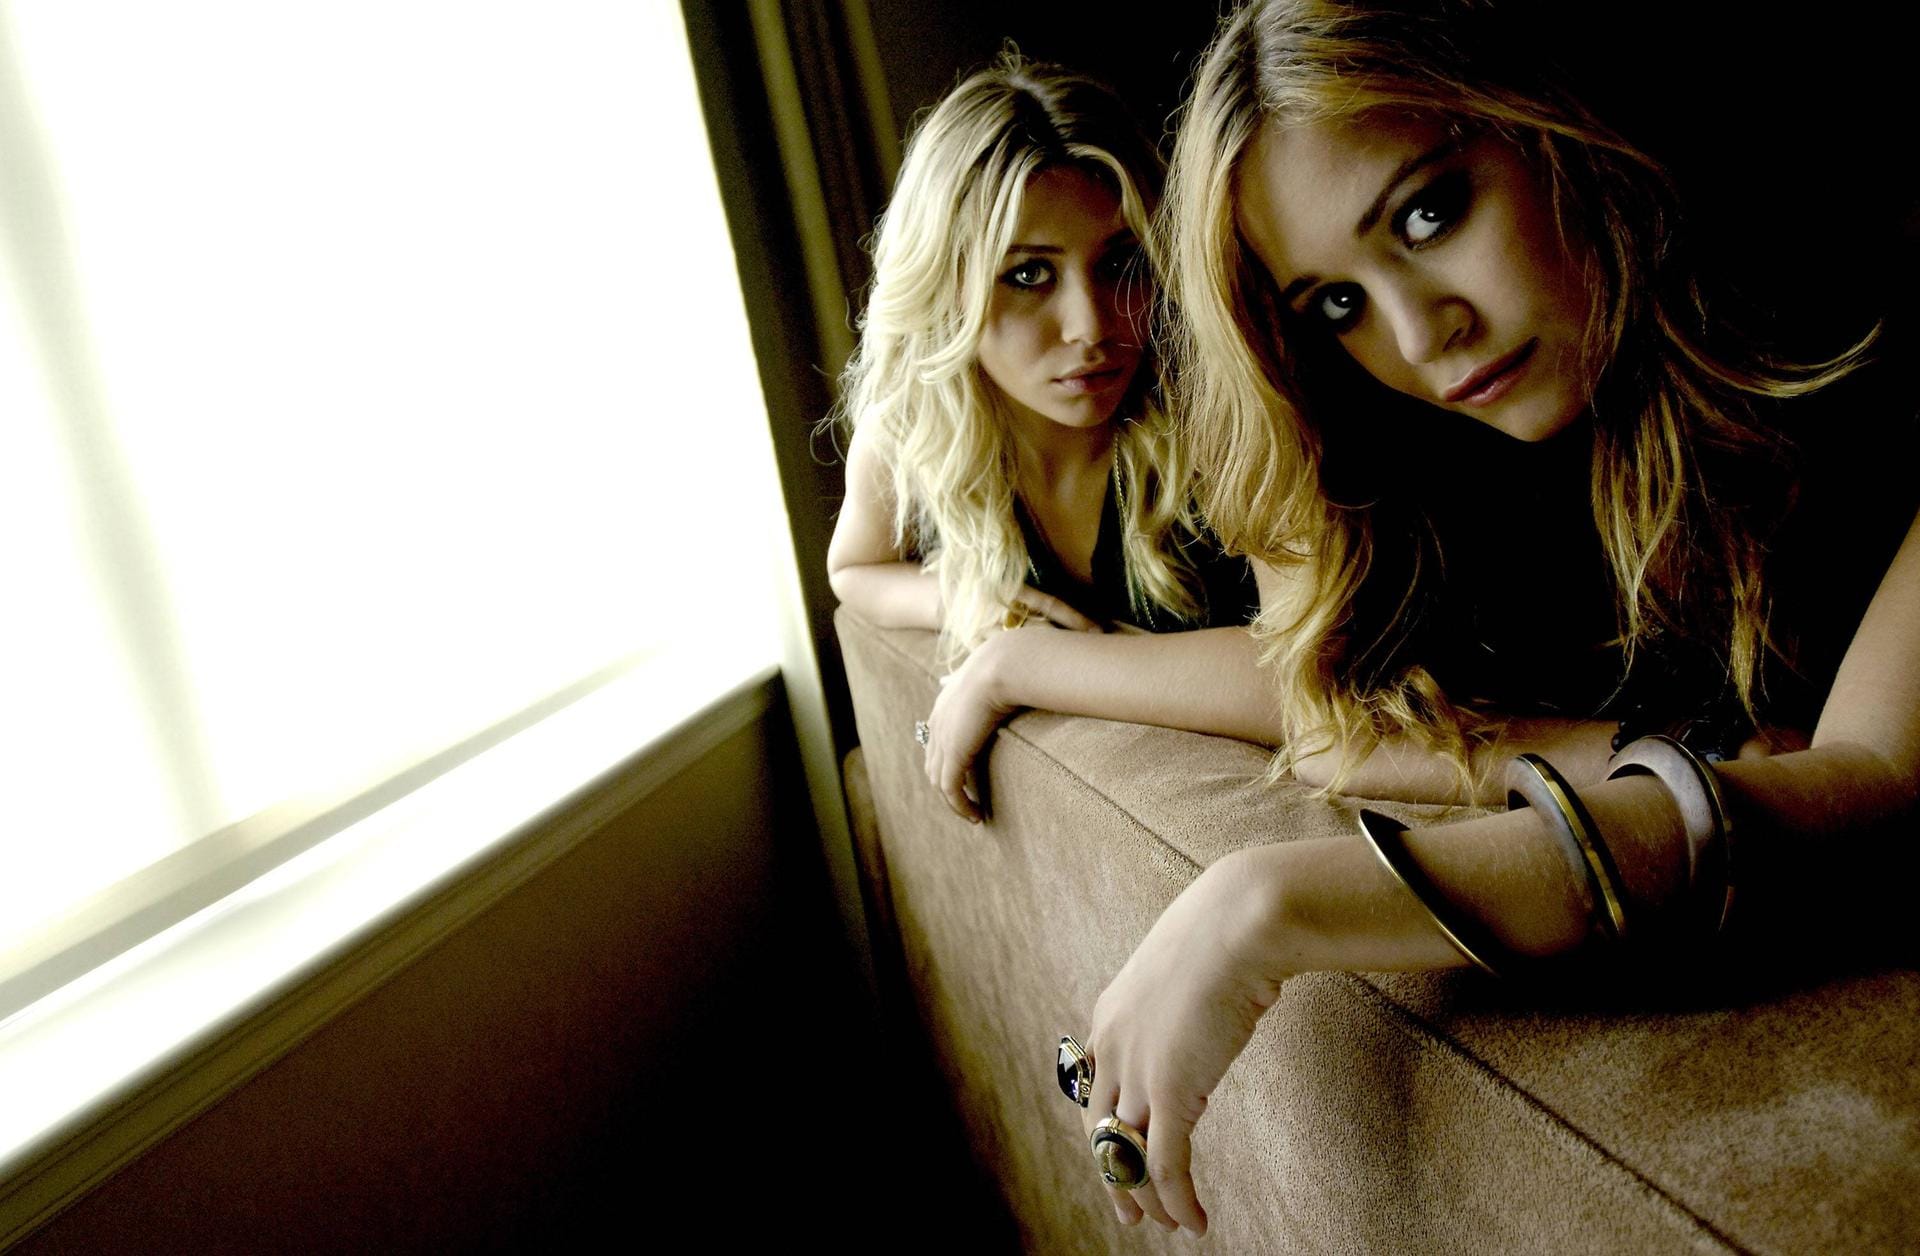 30. August 2005, Toronto: Die Olsen-Zwillinge bei einem Fotoshooting